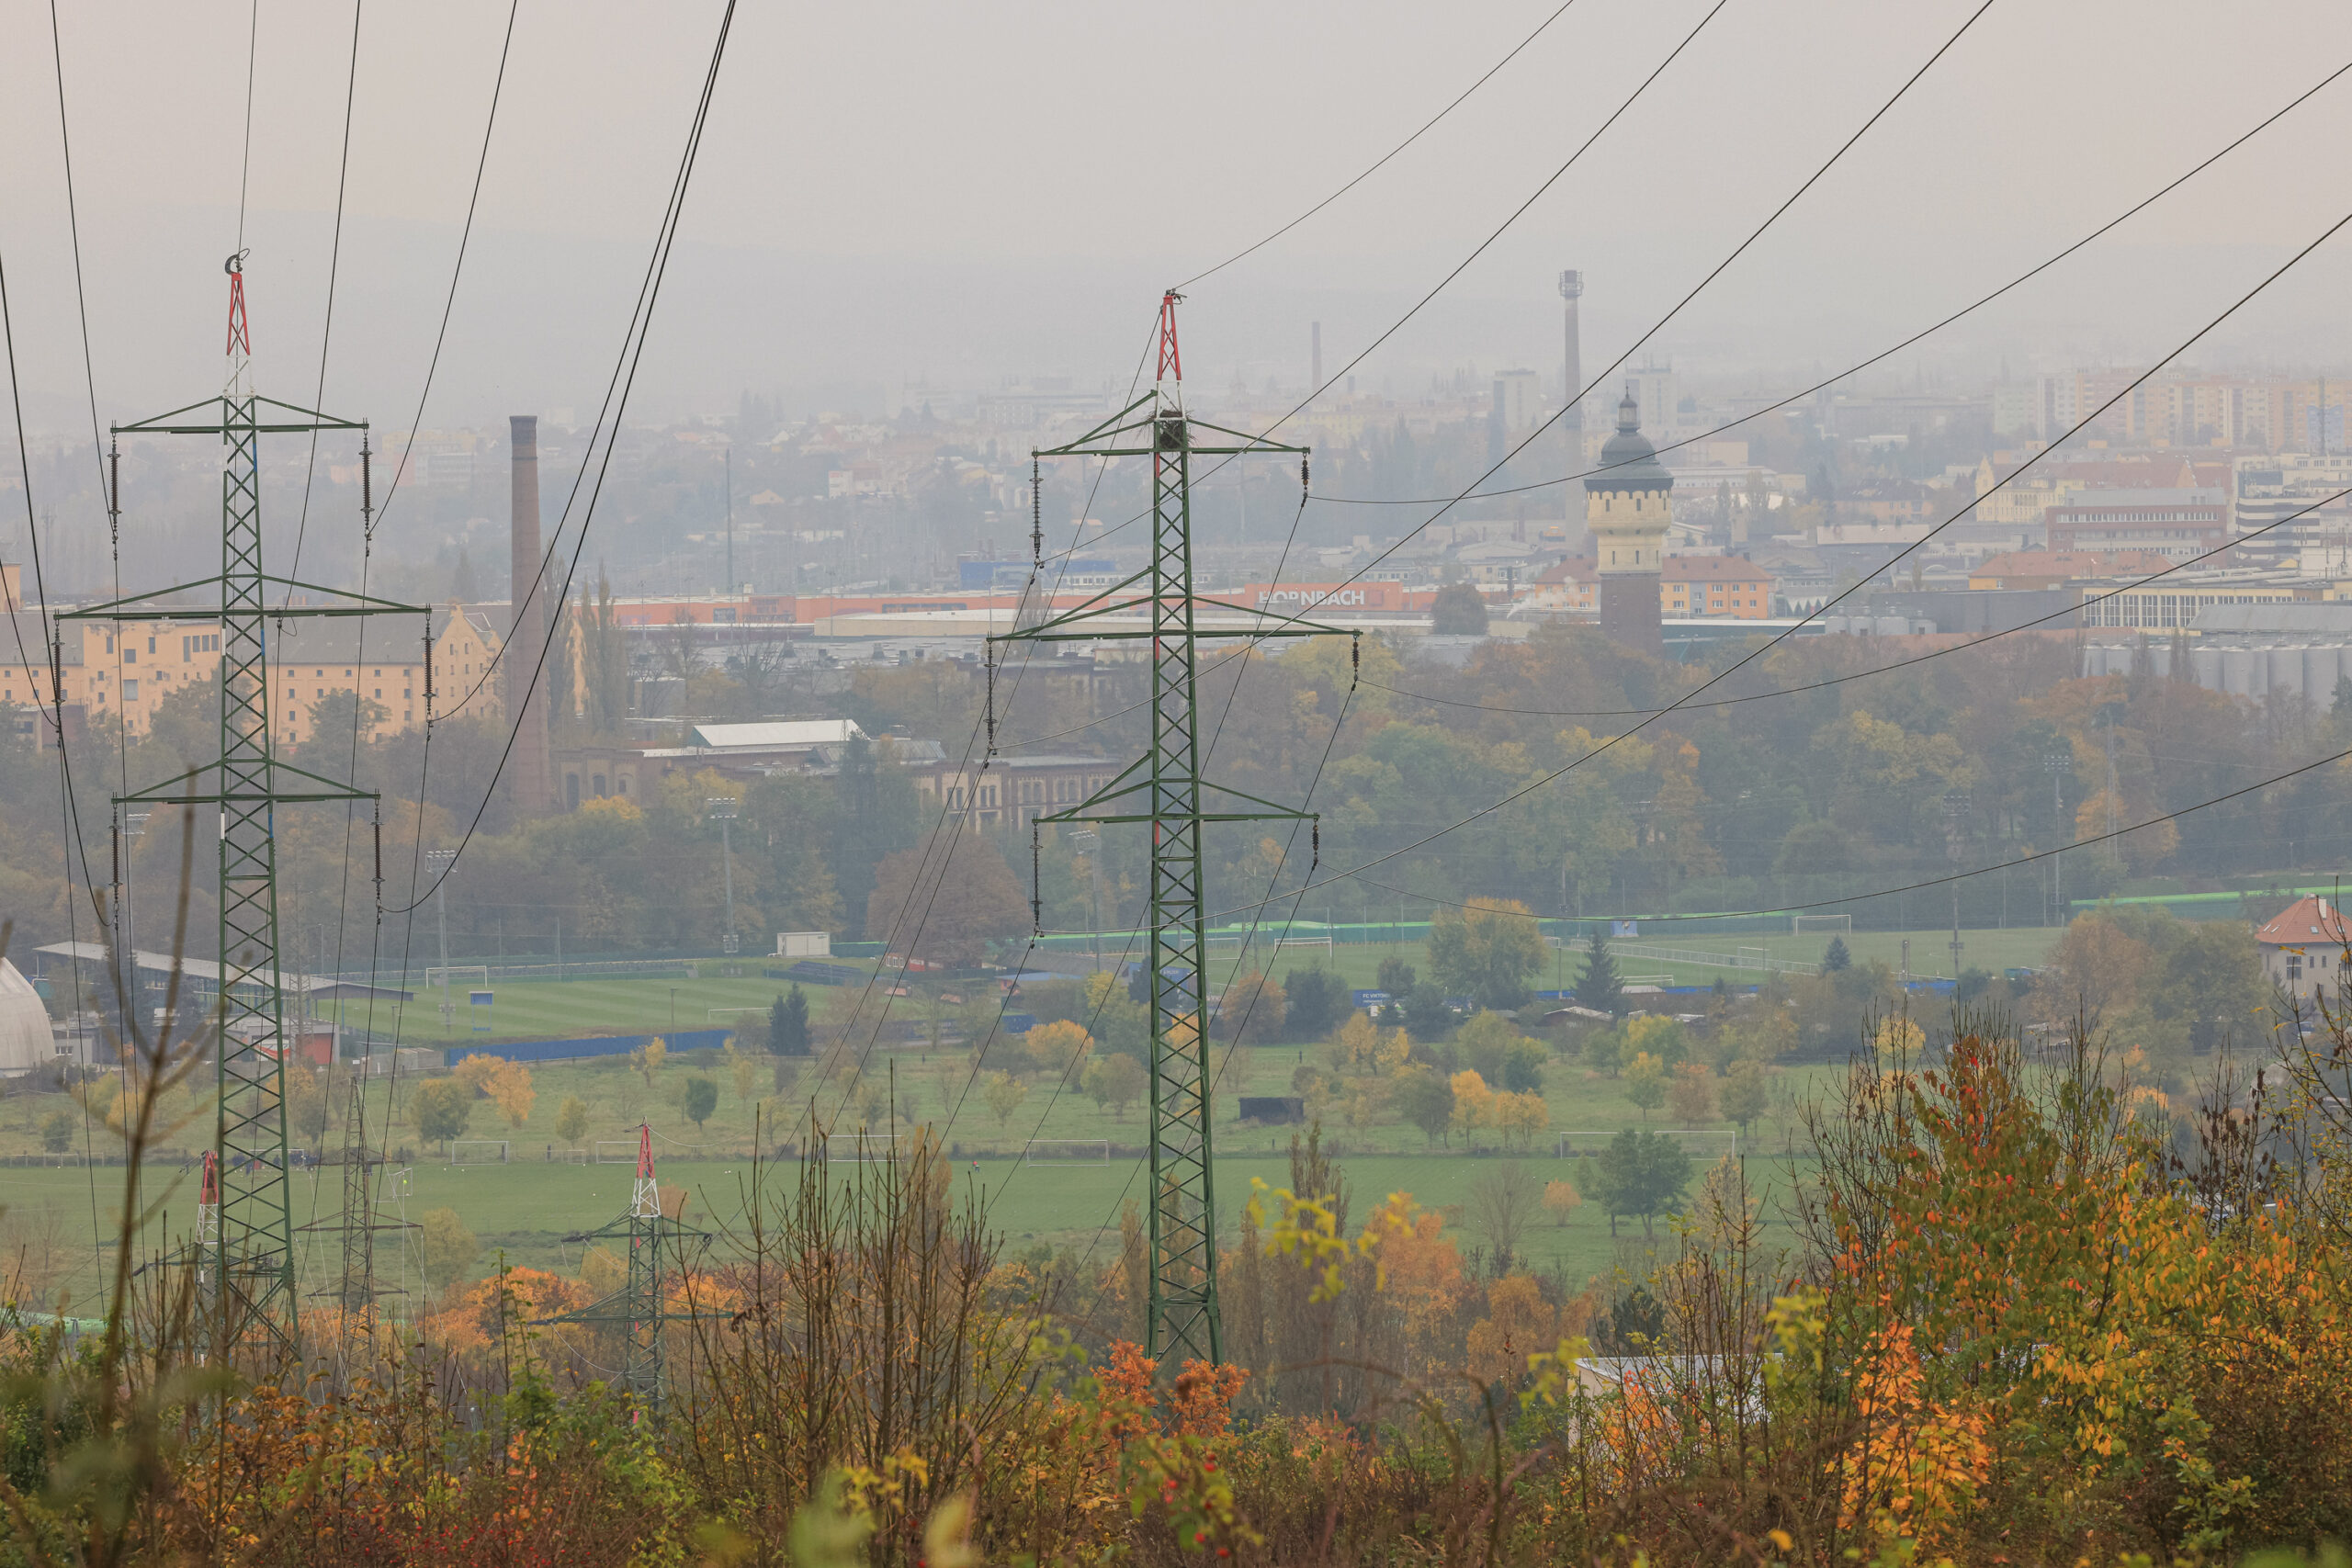 <h1>Pohled z vrchu Mikulka</h1><br />
Pohled do krajiny z vyvýšeného místa přes elektrické vedení – 2 mohutné sloupy a mnoho kabelů. Spodní polovinu tvoří převážně travnaté plochy, zadní starší průmyslová zástavba a další městská výstavba mizející v mlze.